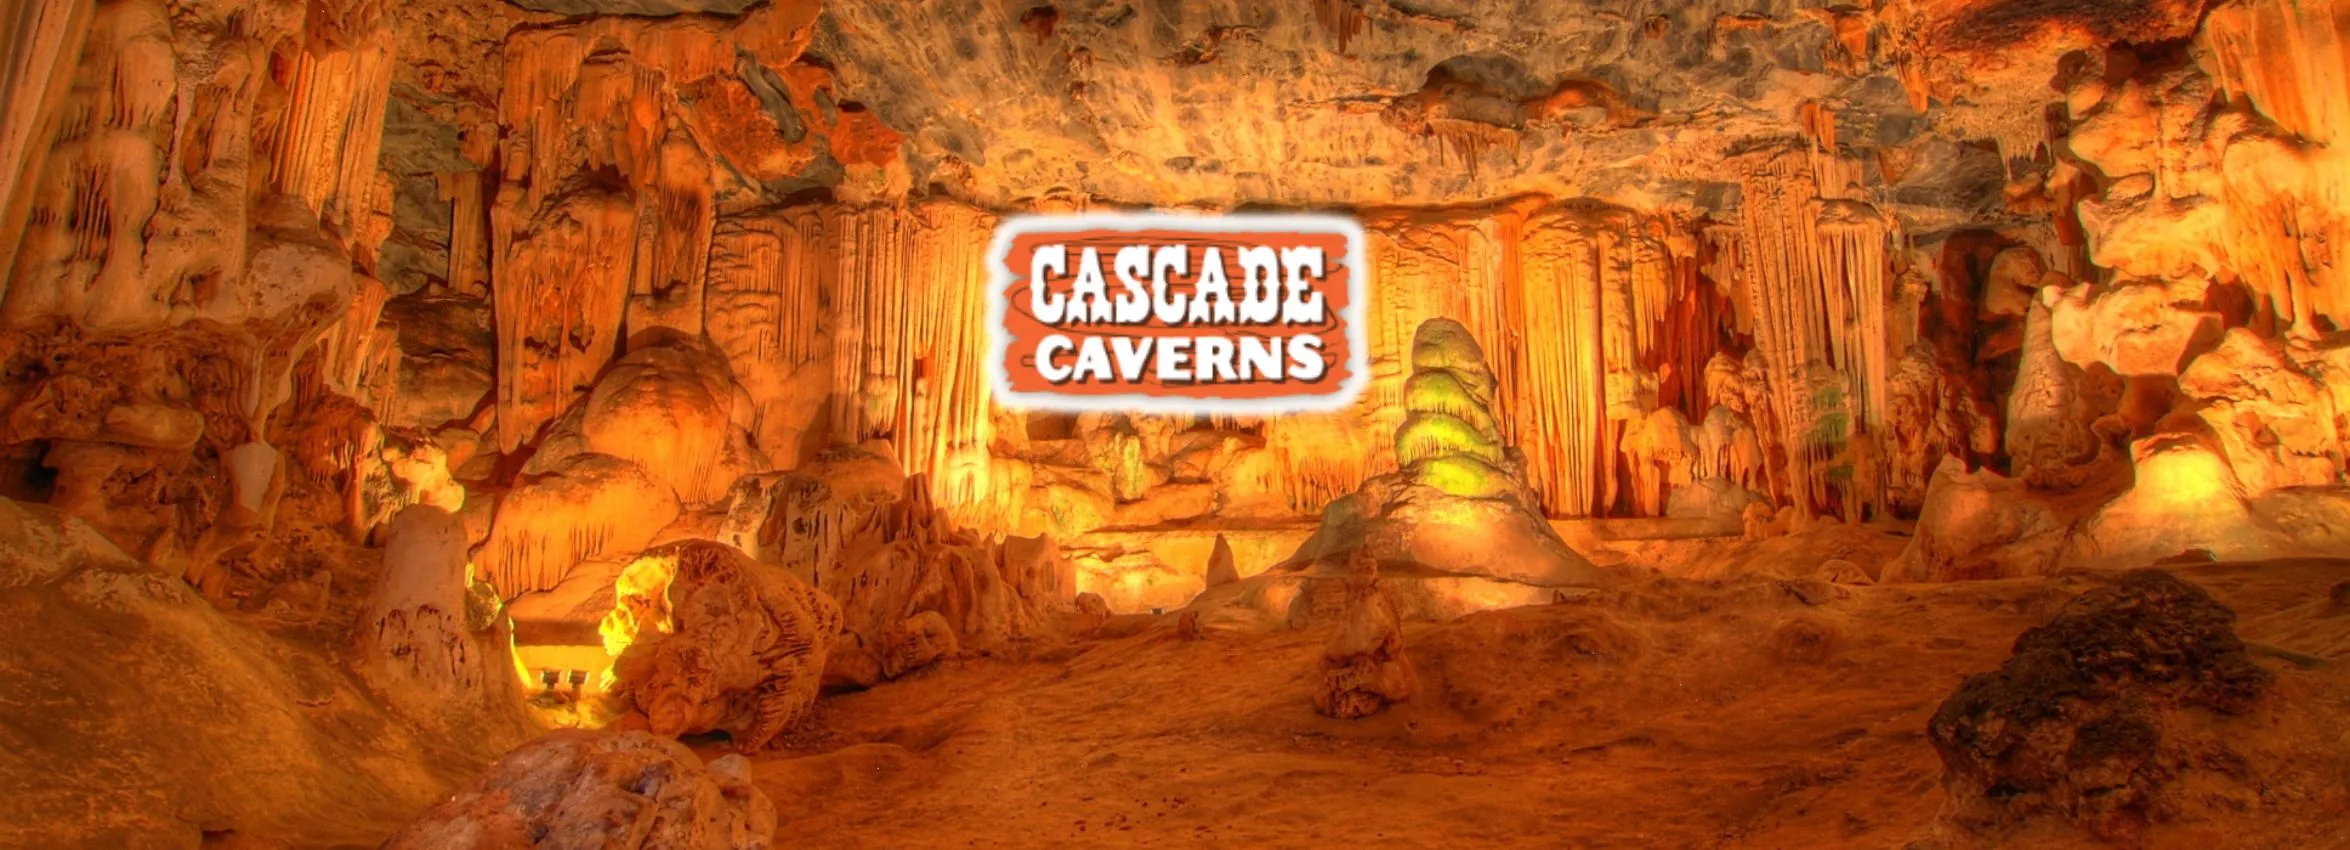 Cascade-Caverns_Desktop_ET